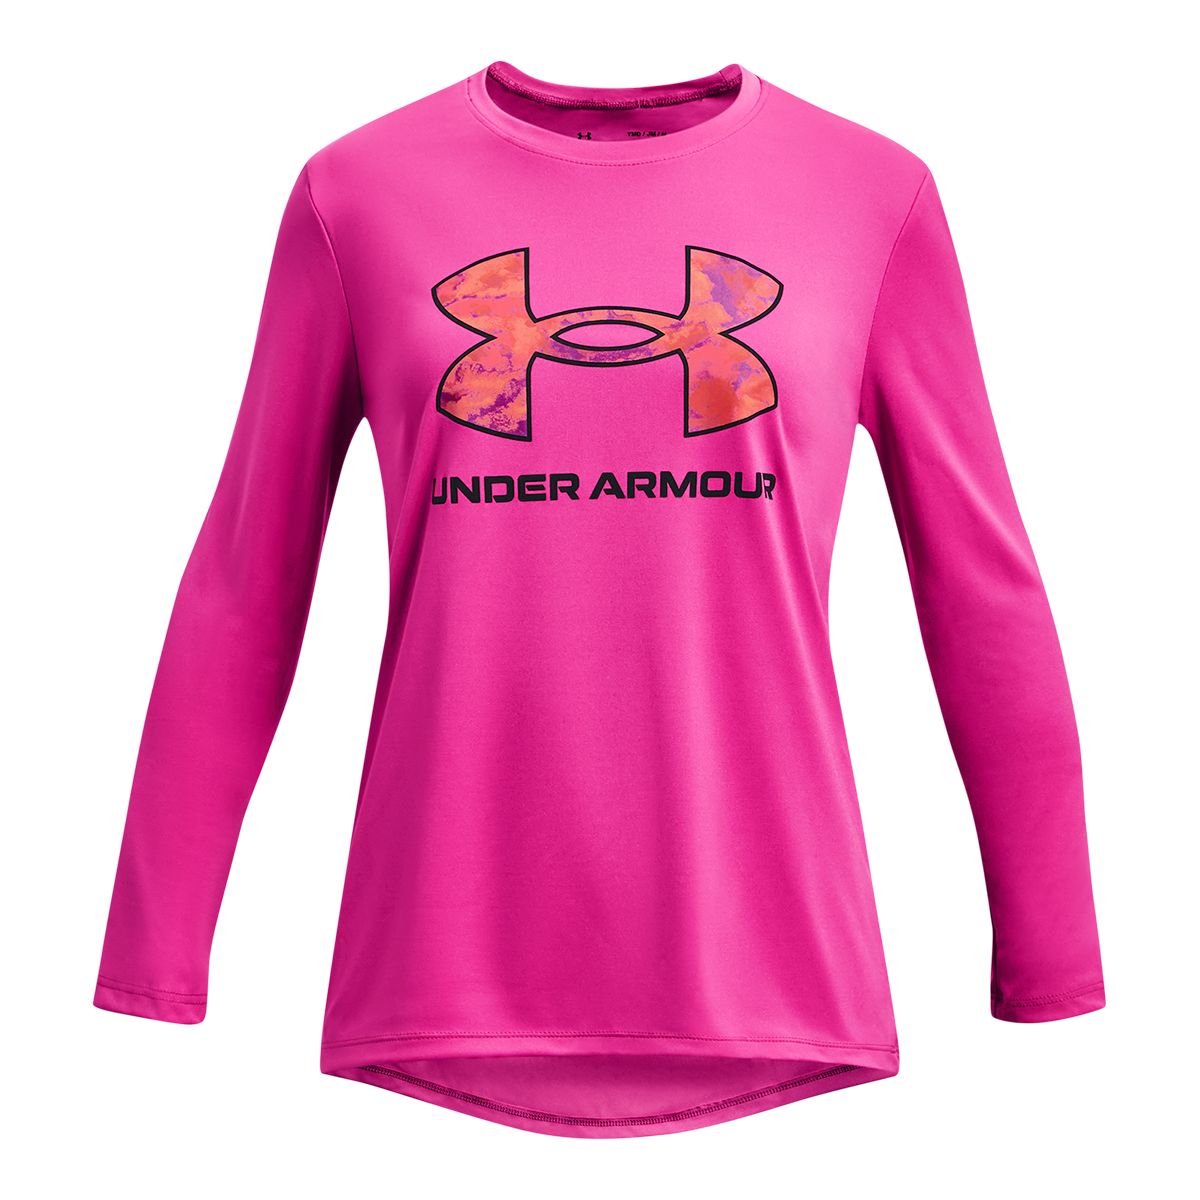 Under Armour Girls' Tech Big Logo Print Fill Long Sleeve Shirt